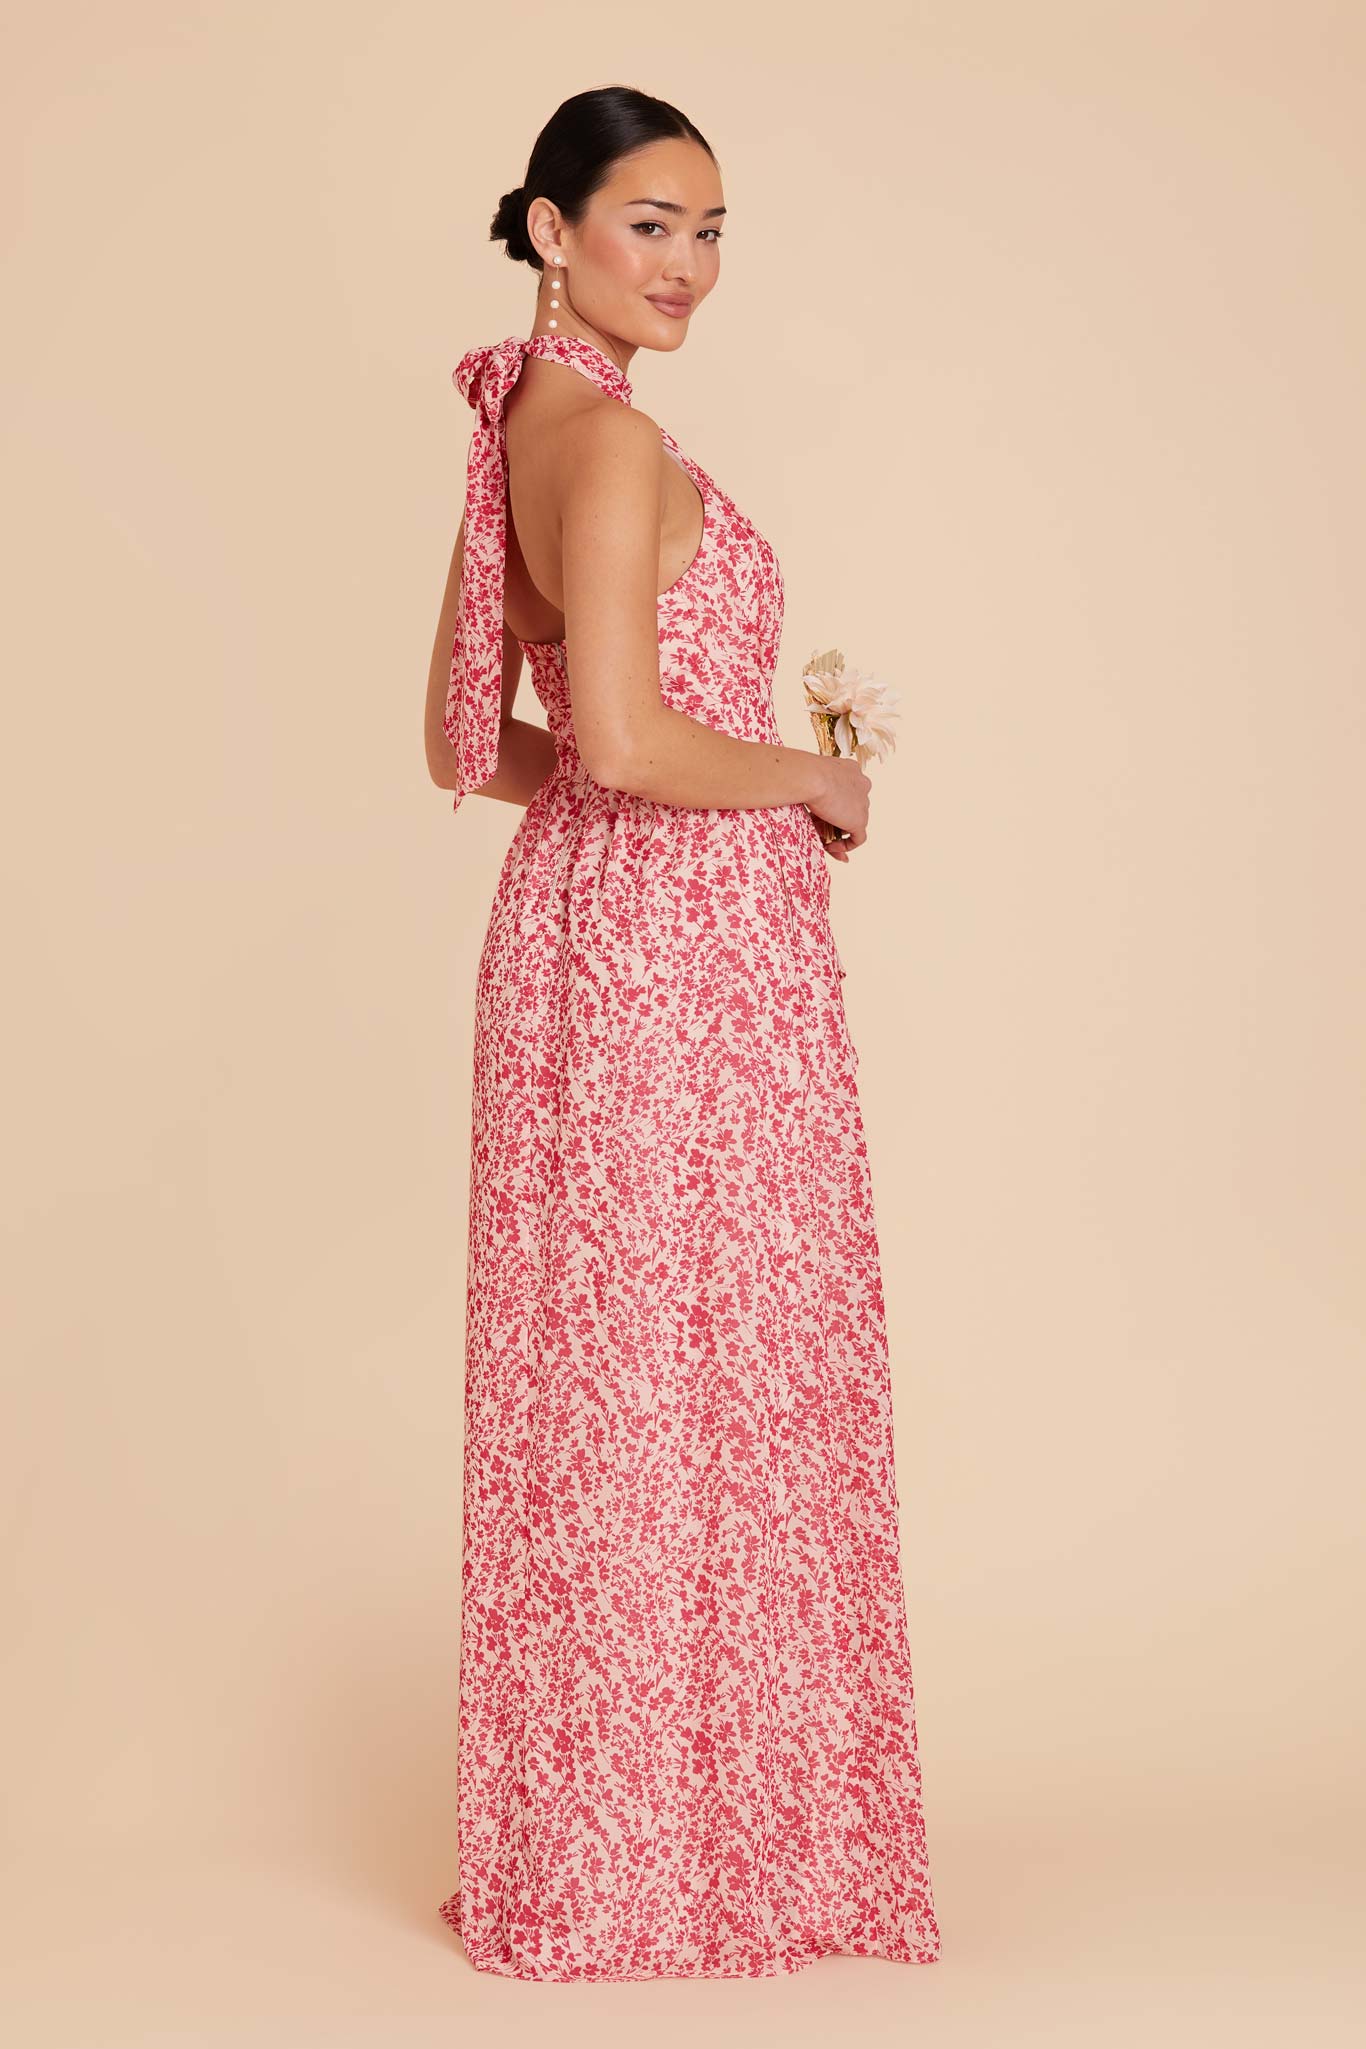 Pink Dreamy Ditsy Joyce Chiffon Dress by Birdy Grey